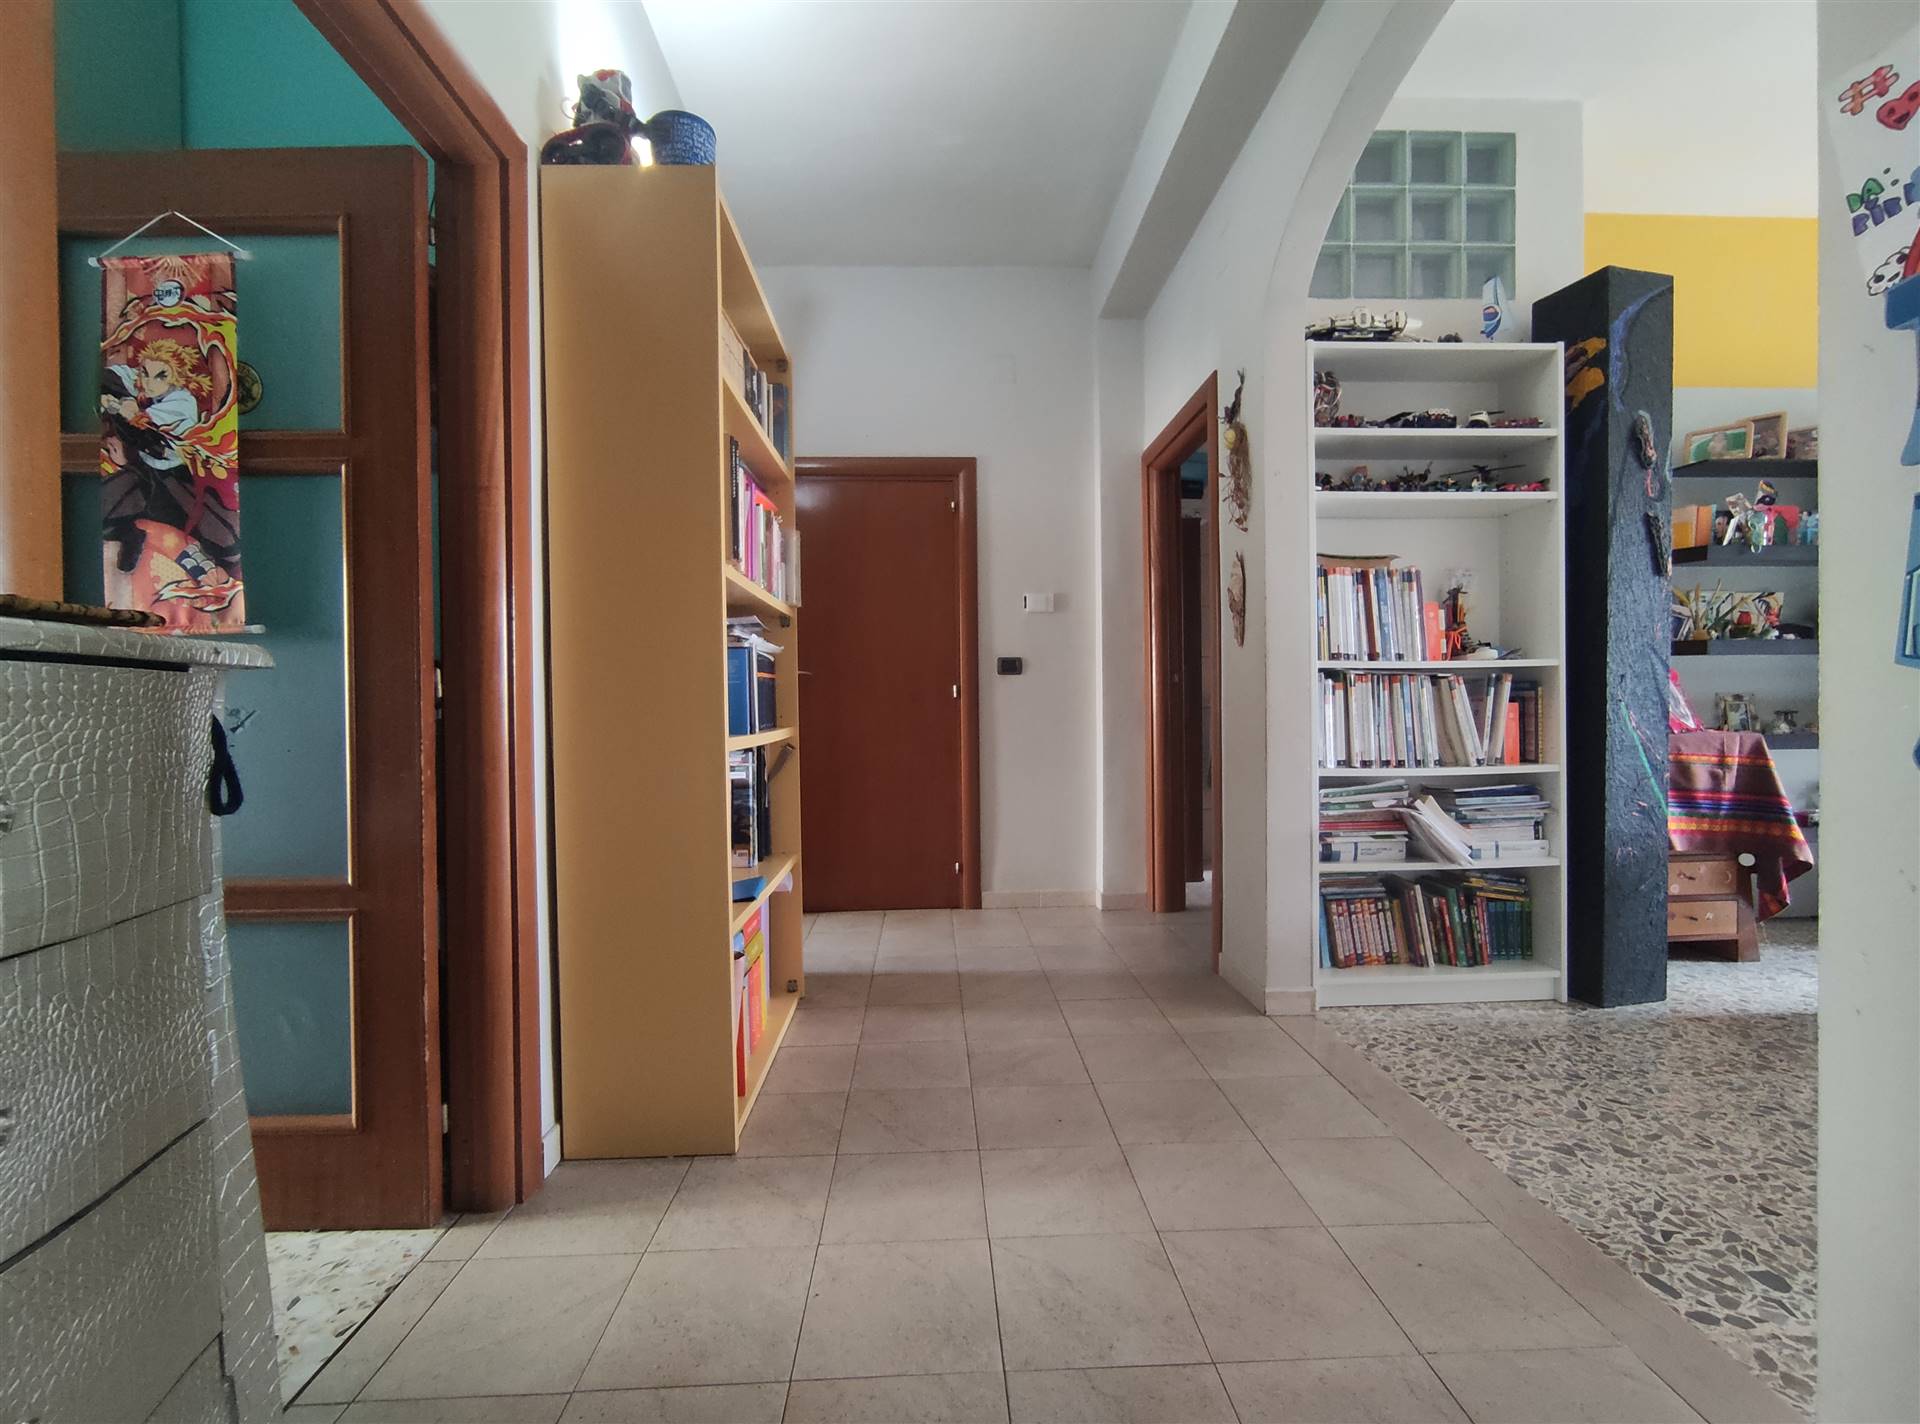 Appartamento in vendita a Santa Maria Capua Vetere, 3 locali, prezzo € 75.000 | PortaleAgenzieImmobiliari.it